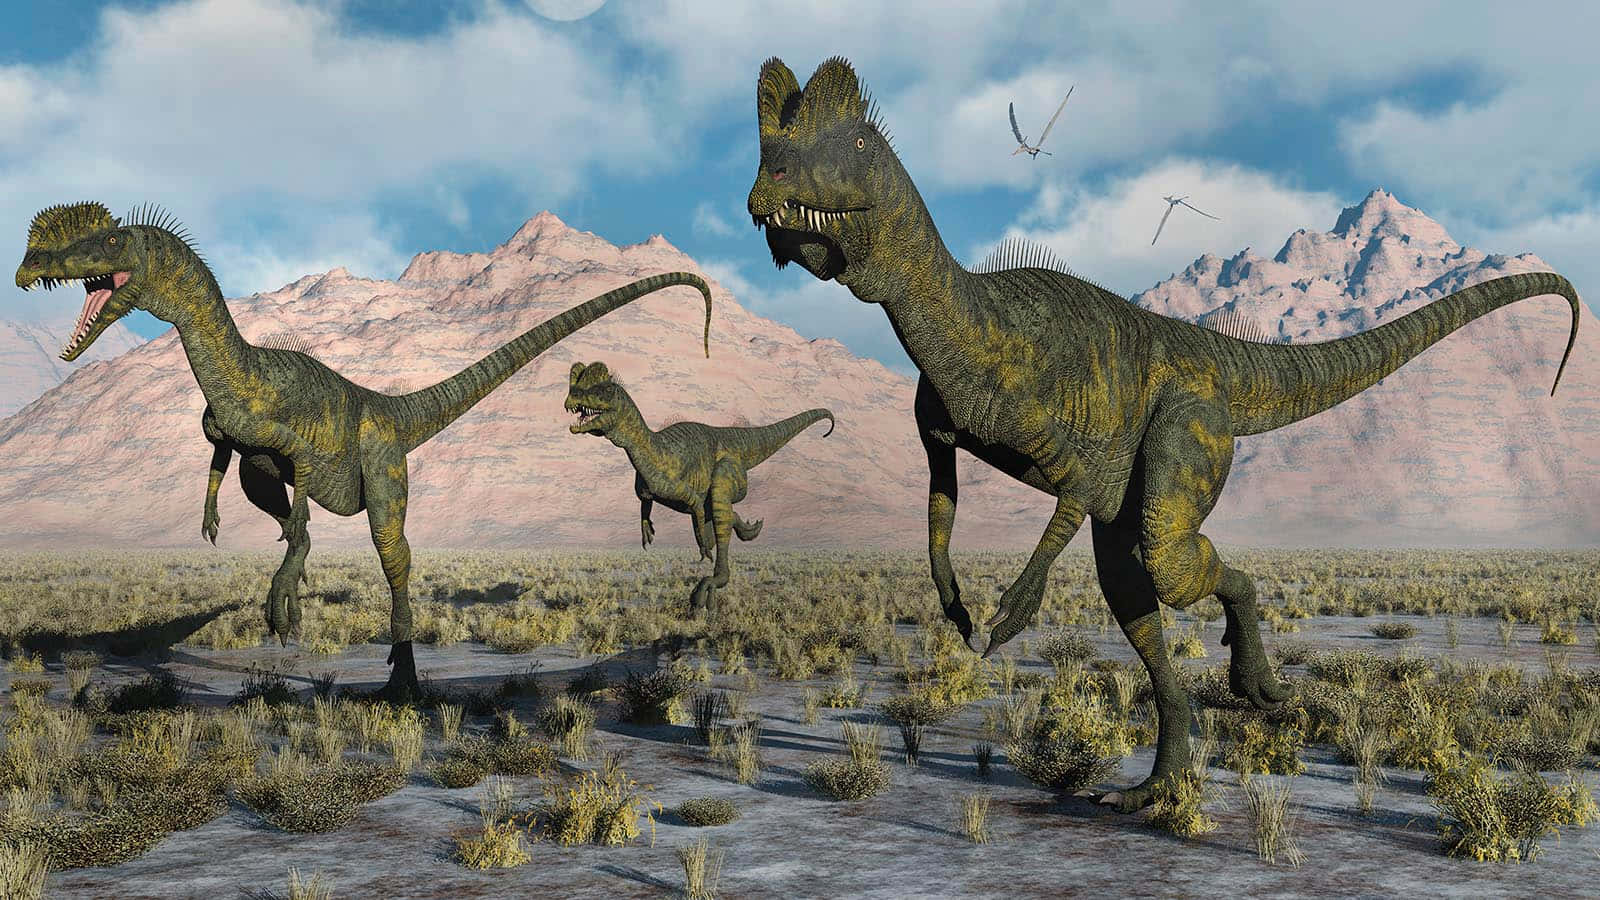 Umgrupo De Dinossauros Está Caminhando No Deserto.